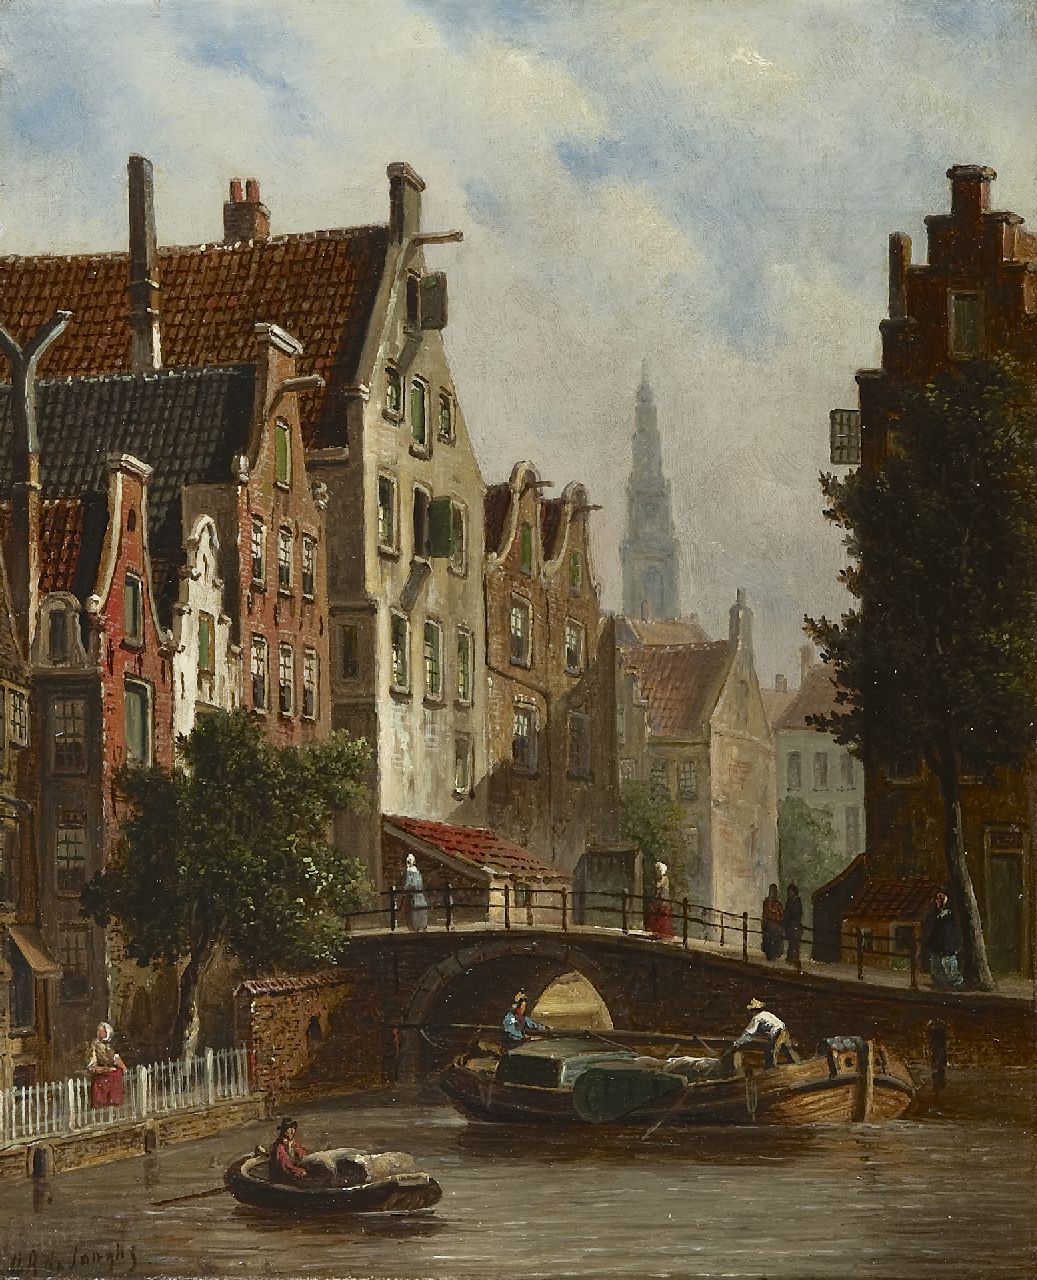 Jongh O.R. de | Oene Romkes de Jongh, Amsterdams stadsgezicht met de Westertoren, olieverf op doek 36,1 x 29,7 cm, gesigneerd linksonder